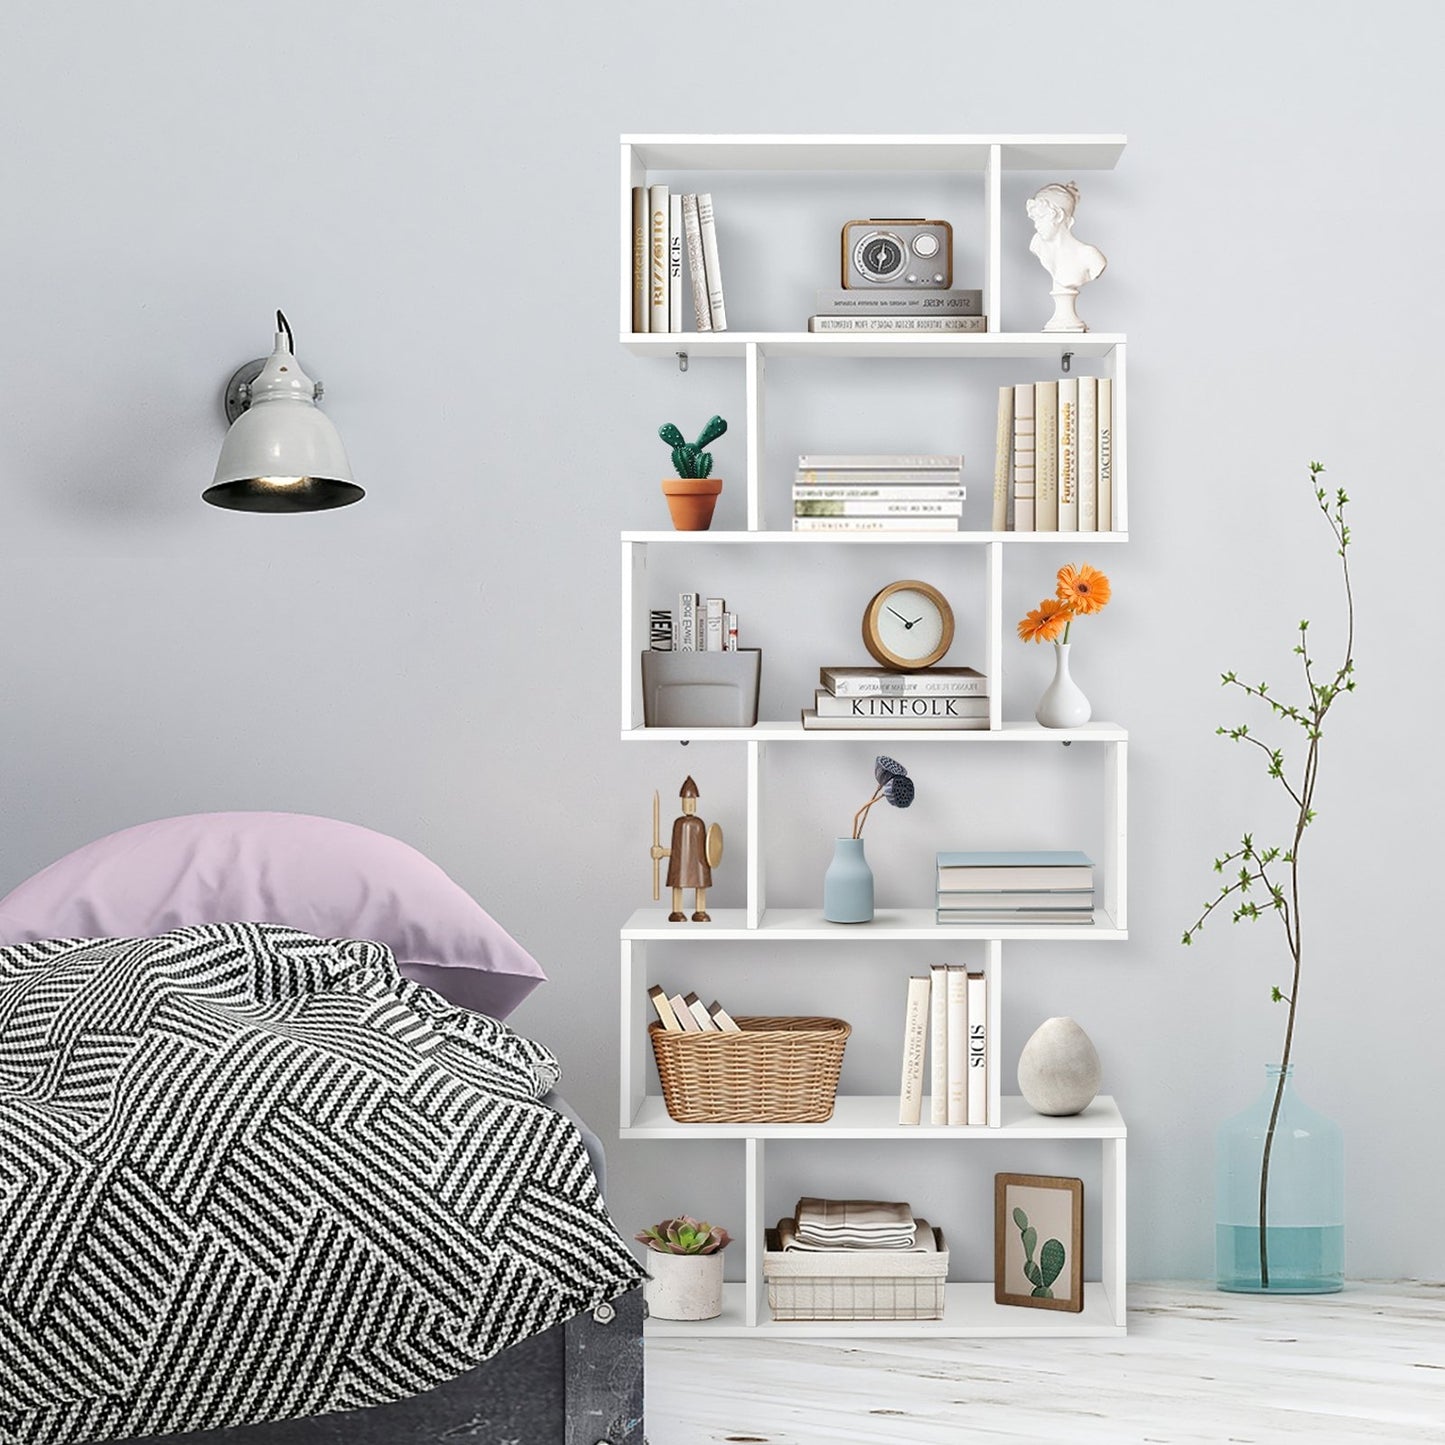 6 Tier S-Shaped Bookshelf Storage Display Bookcase Decor Z-Shelf, White